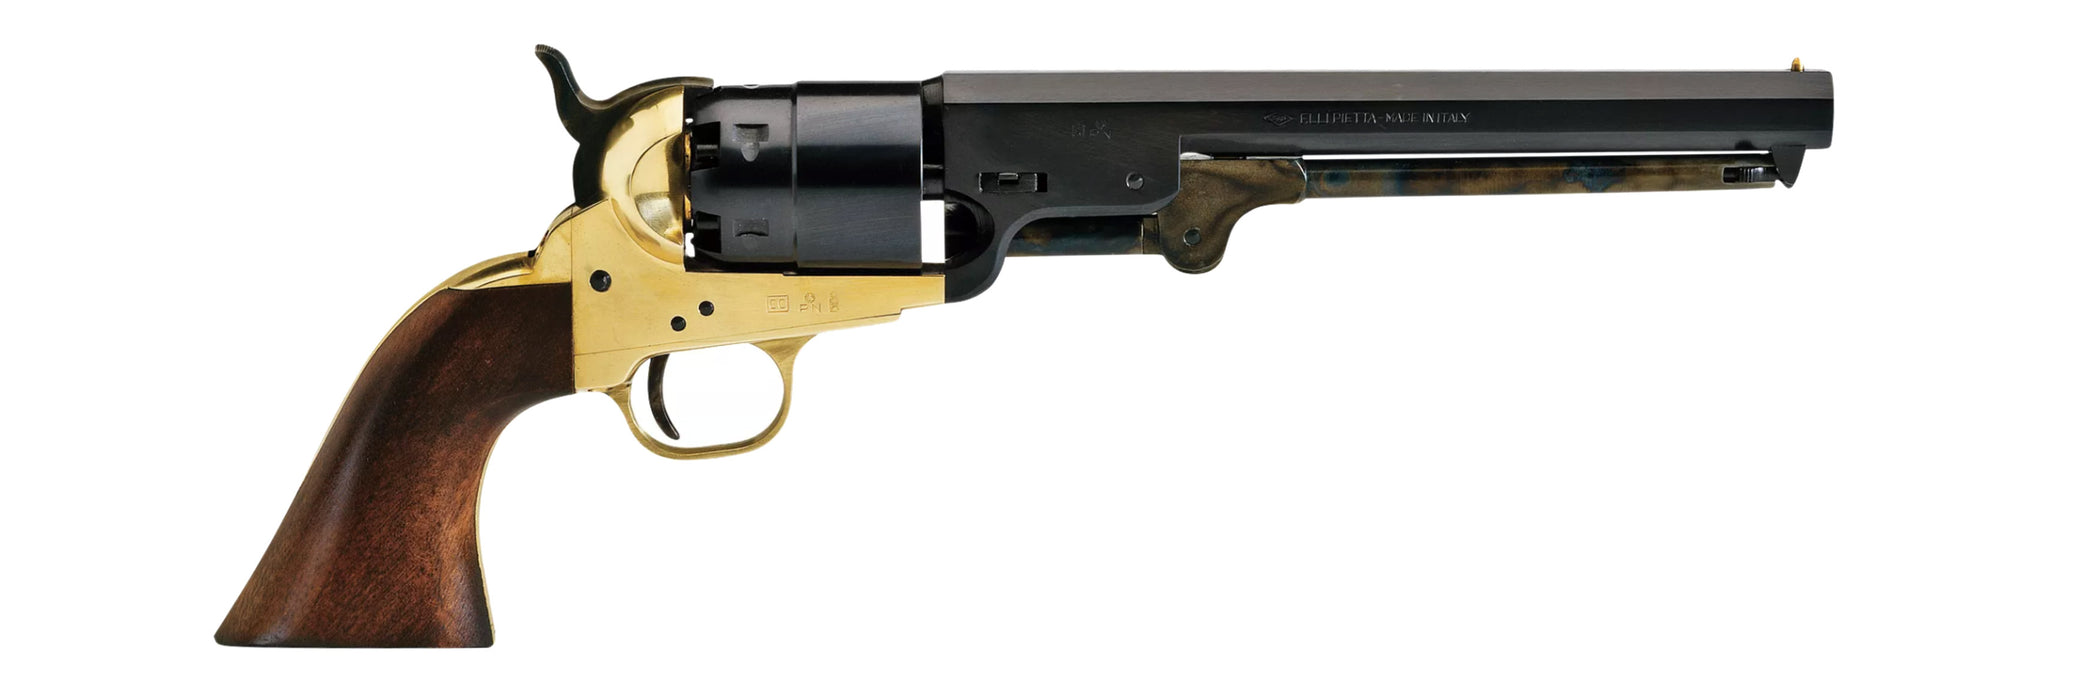 navy revolver